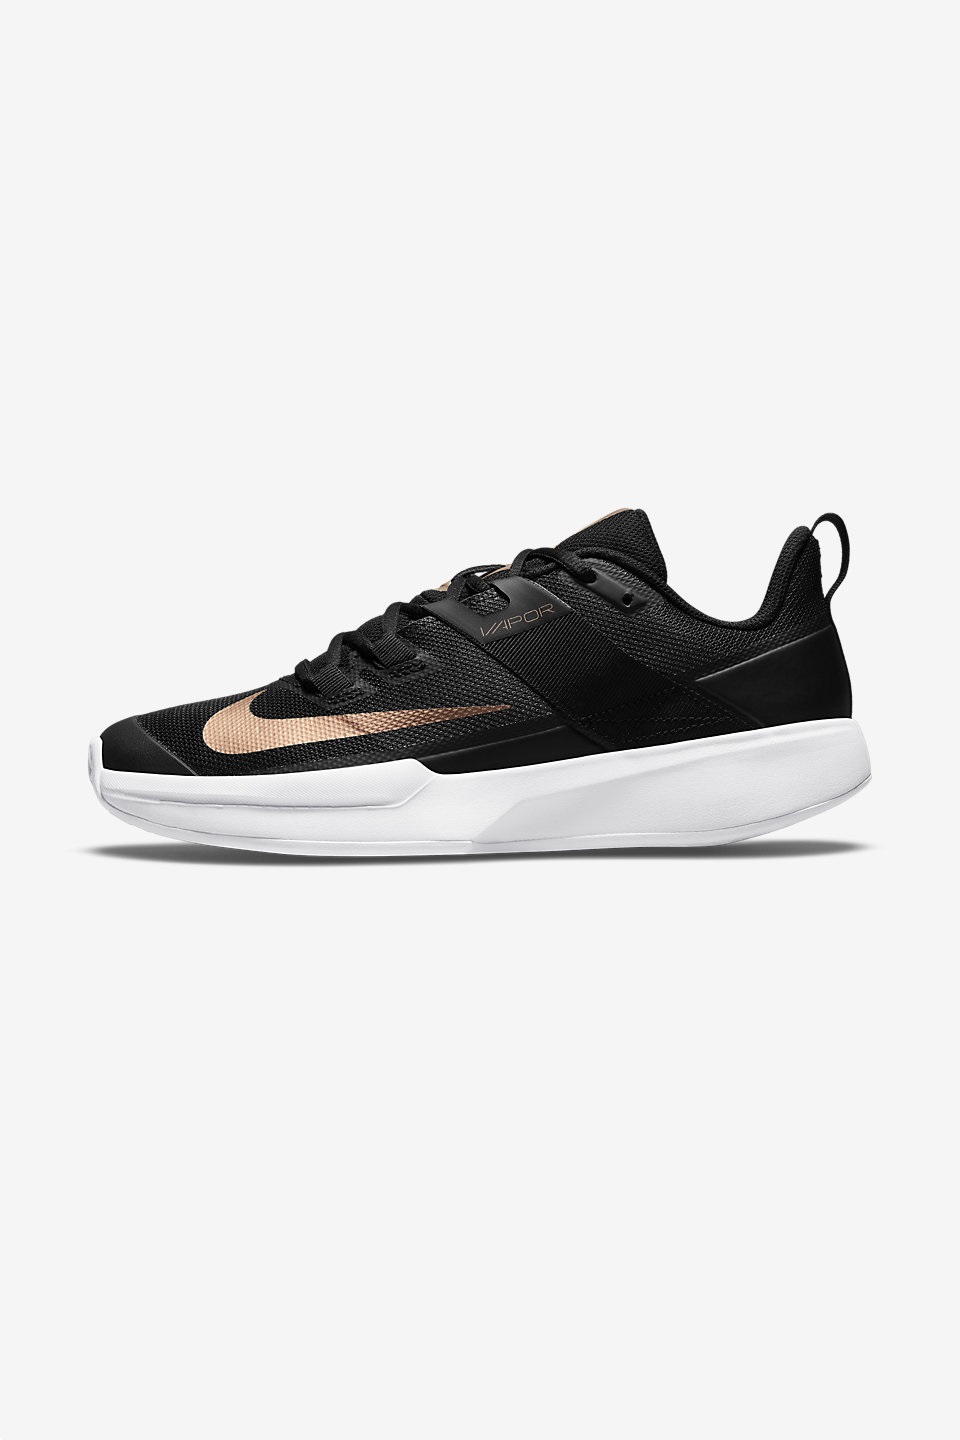 NIKE - Nike Court Vapor Lite Kadın Tenis Ayakkabısı Toprak